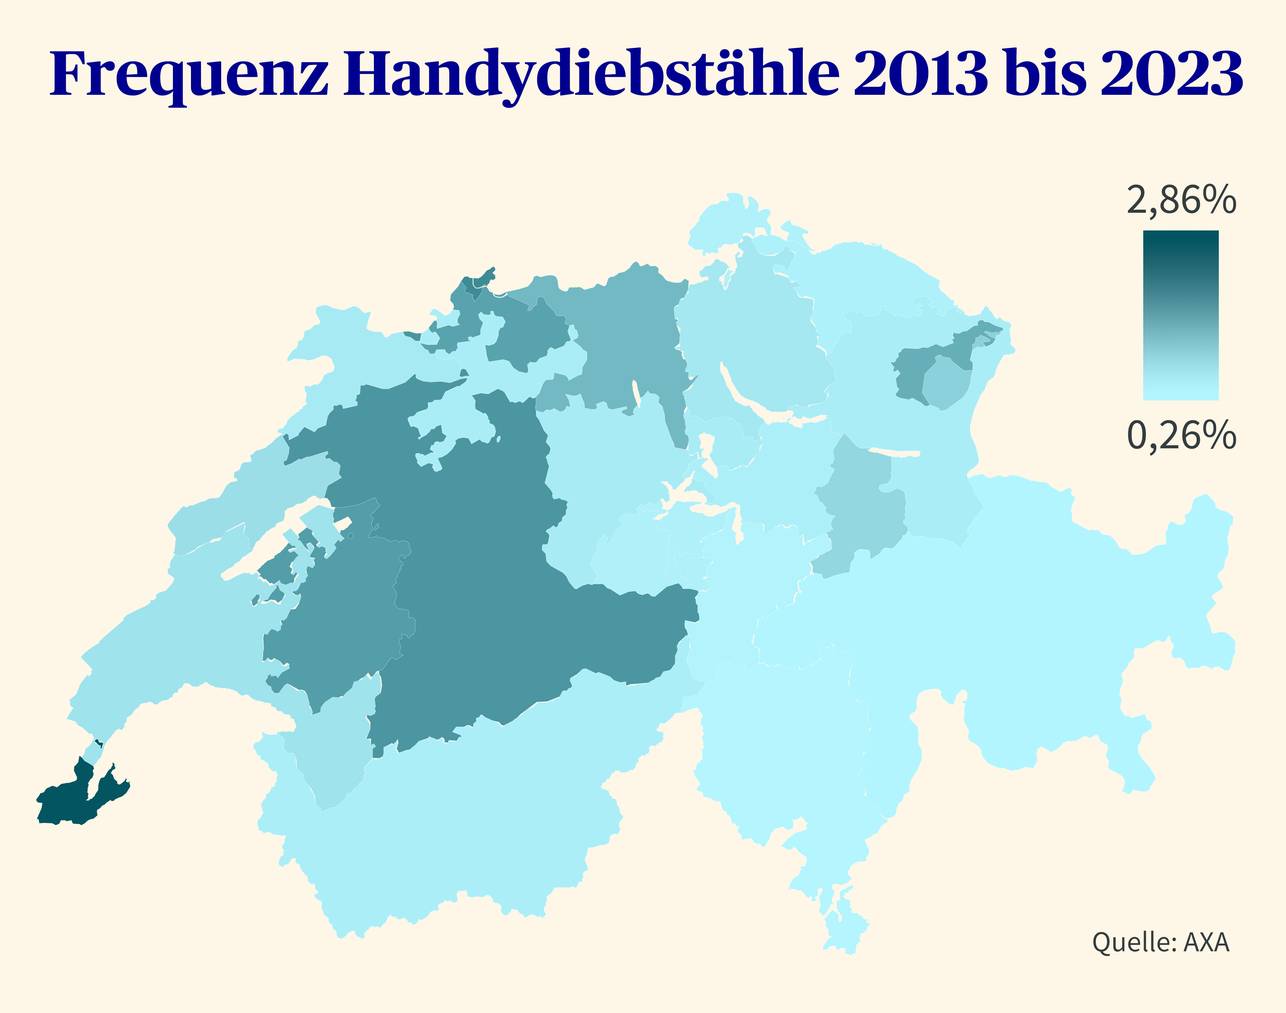 Die Frequenz von Handydiebstählen im Zeitrahmen 2013 bis 2023.